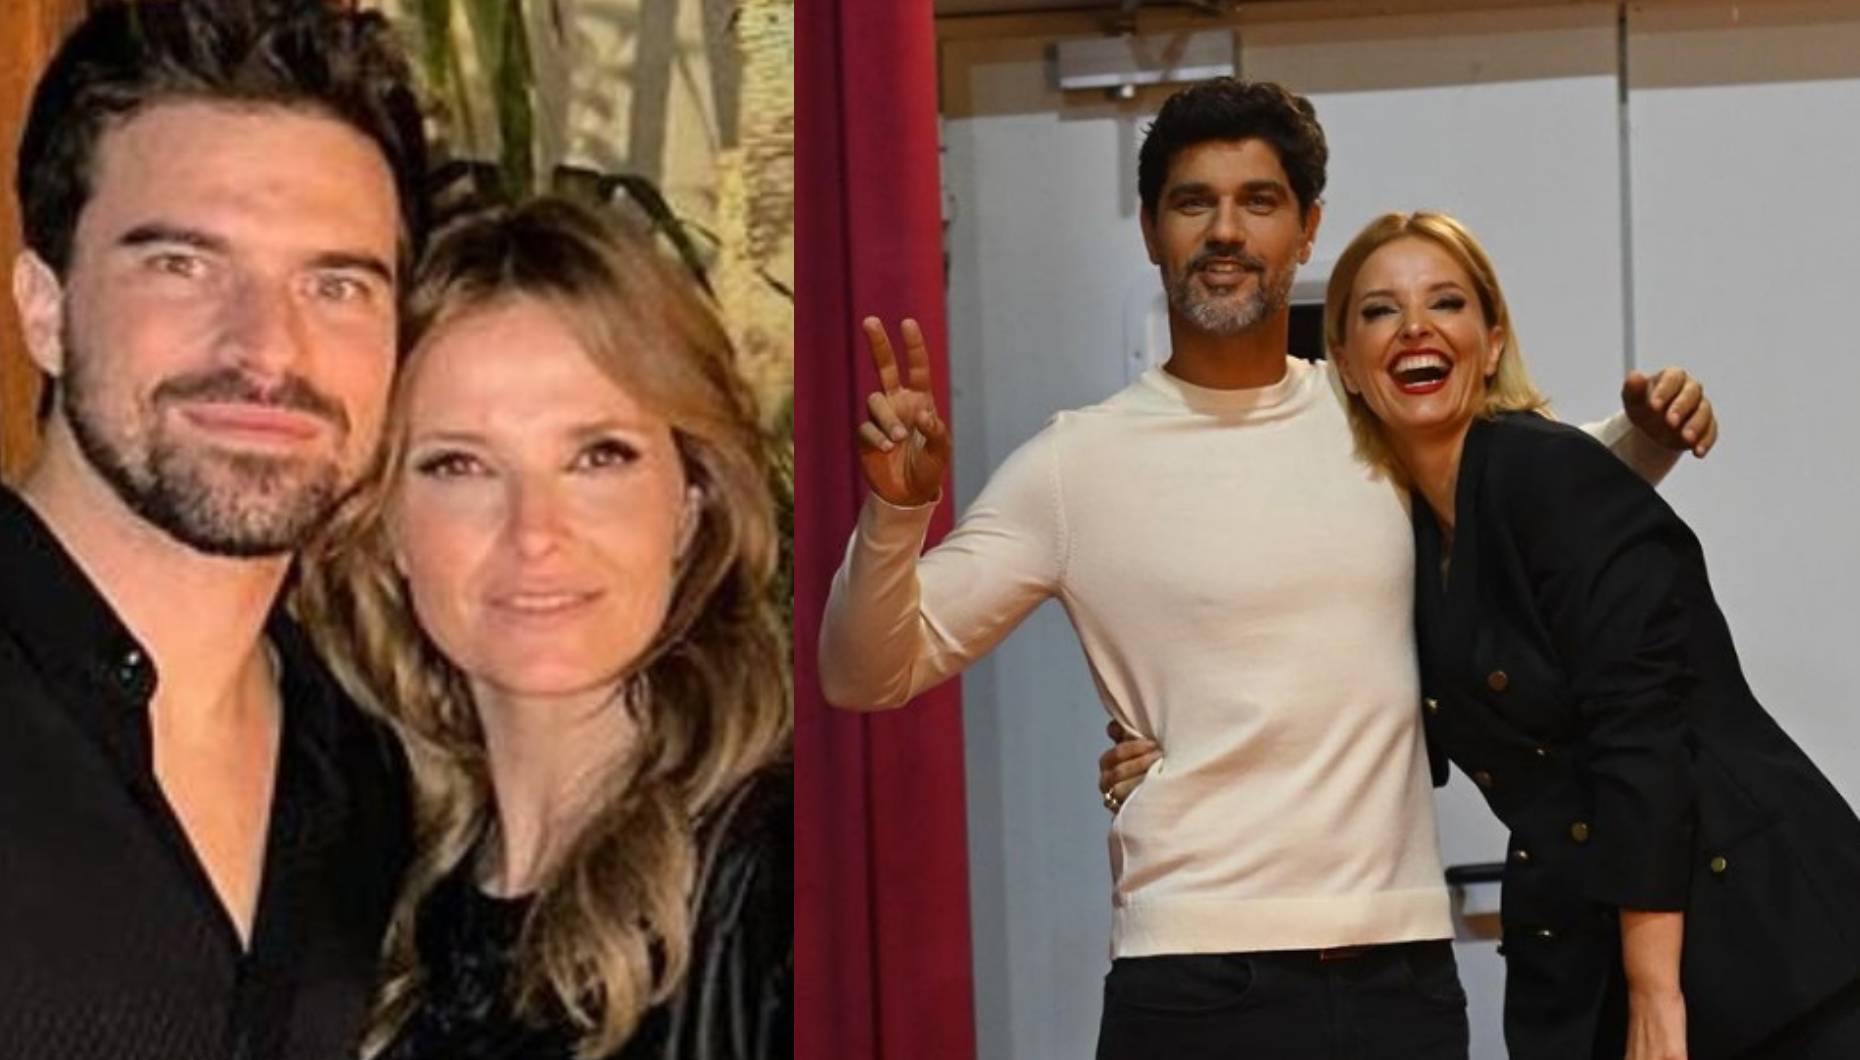 Novo namorado de Cristina Ferreira com ciúmes de Bruno Cabrerizo?